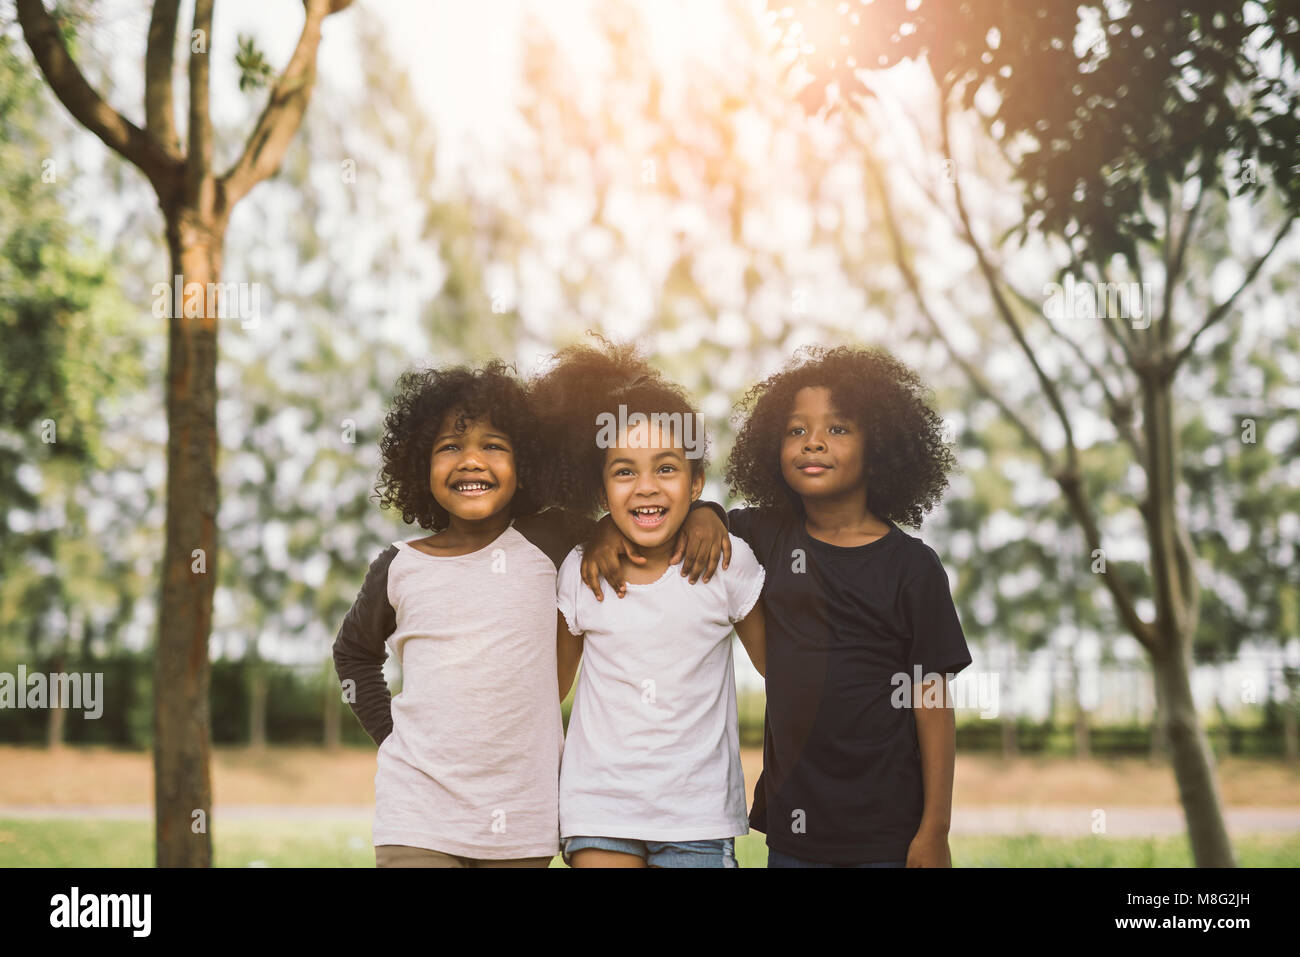 Los niños amistad compañerismo sonriente felicidad concepto.afroamericano cute little Boy y Girl abrazo cada otro día soleado en verano Foto de stock